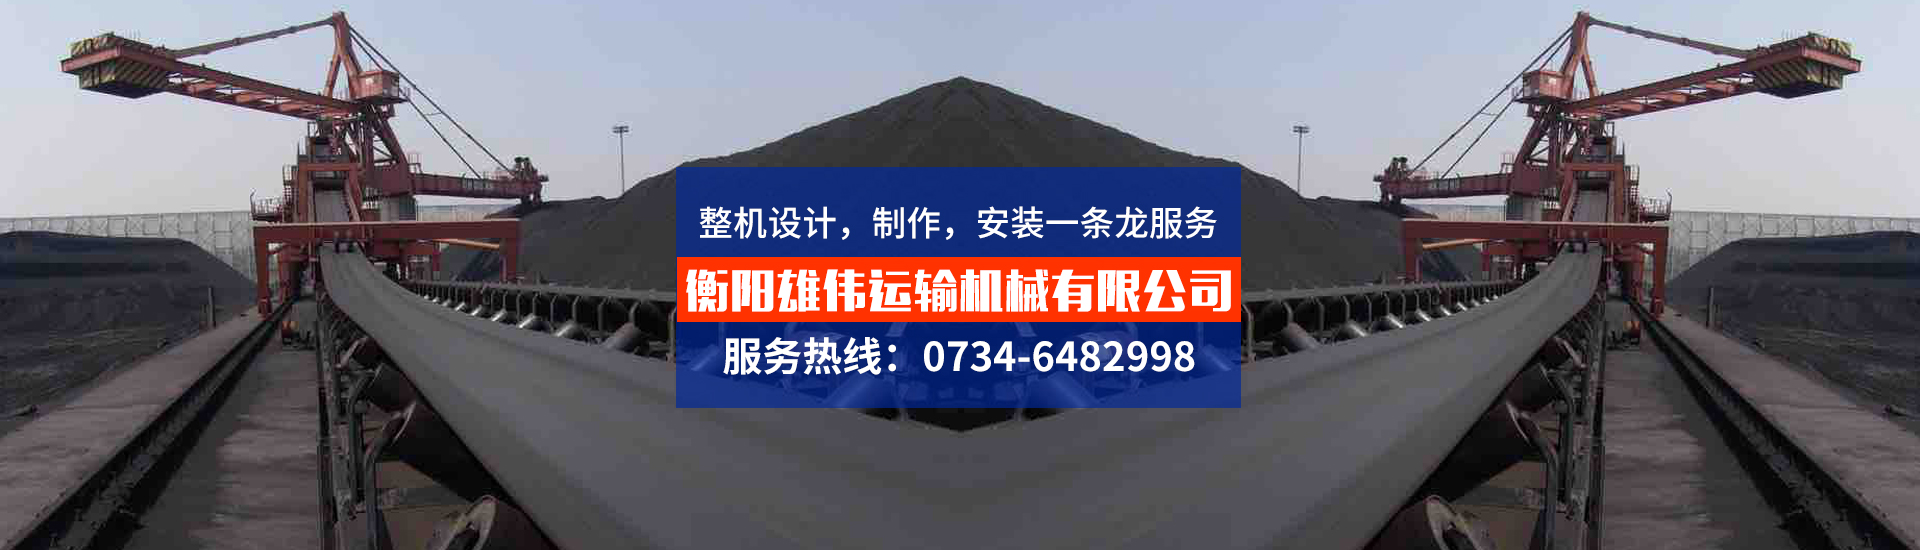 衡陽雄偉運輸機械有限公司_湖南膠帶輸送機械生產銷售